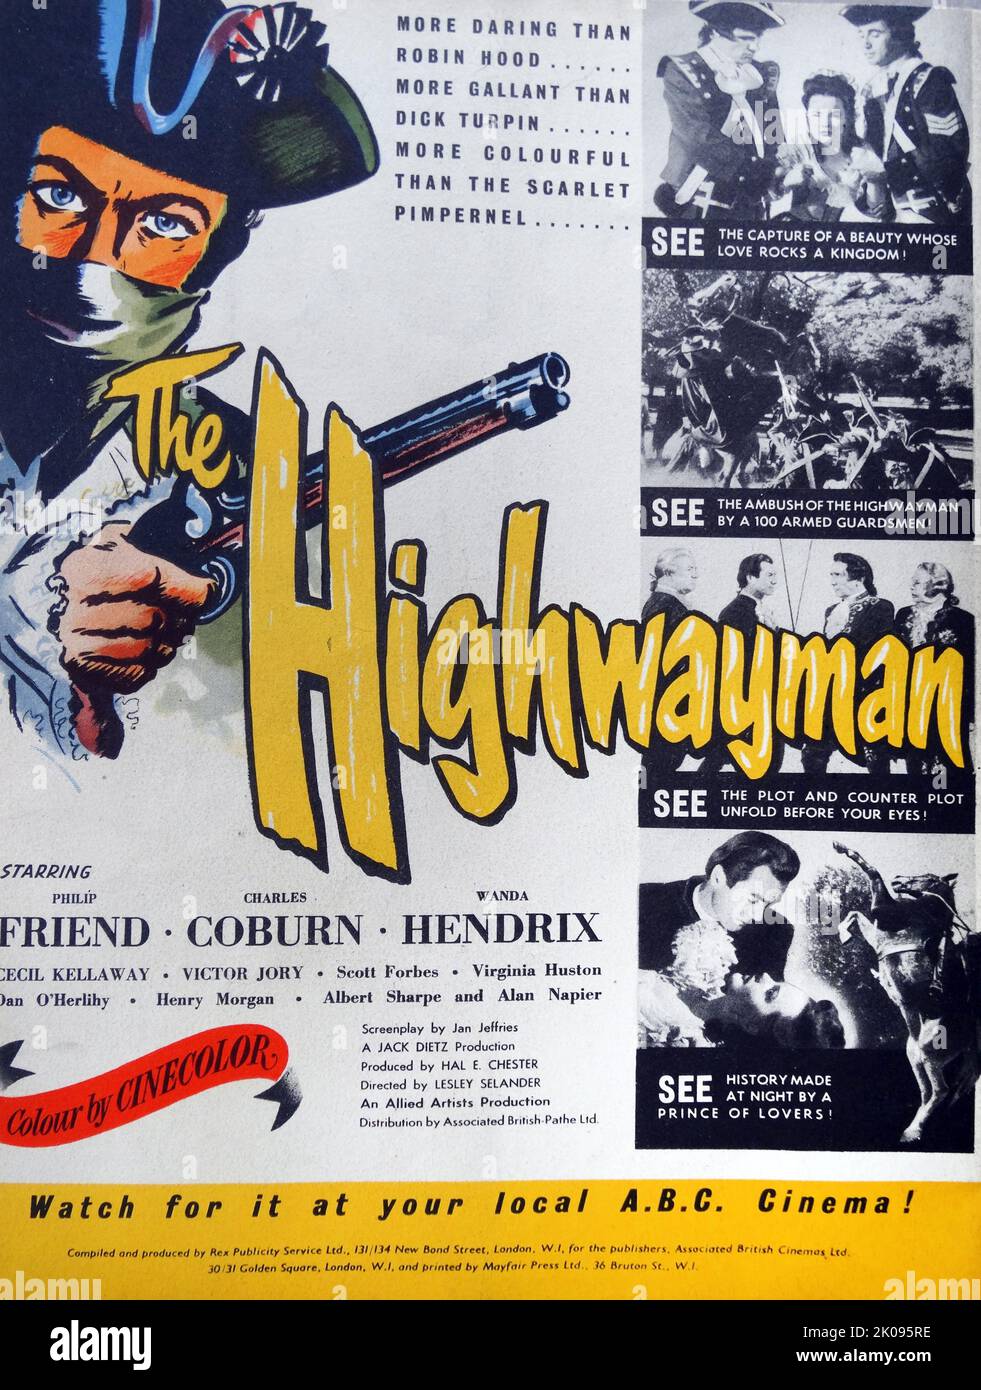 Publicité pour le film de 1952 The Highwayman. Le Highwayman est un film Cinecolor de 1951 basé sur le poème du même nom d'Alfred Noyes. Banque D'Images